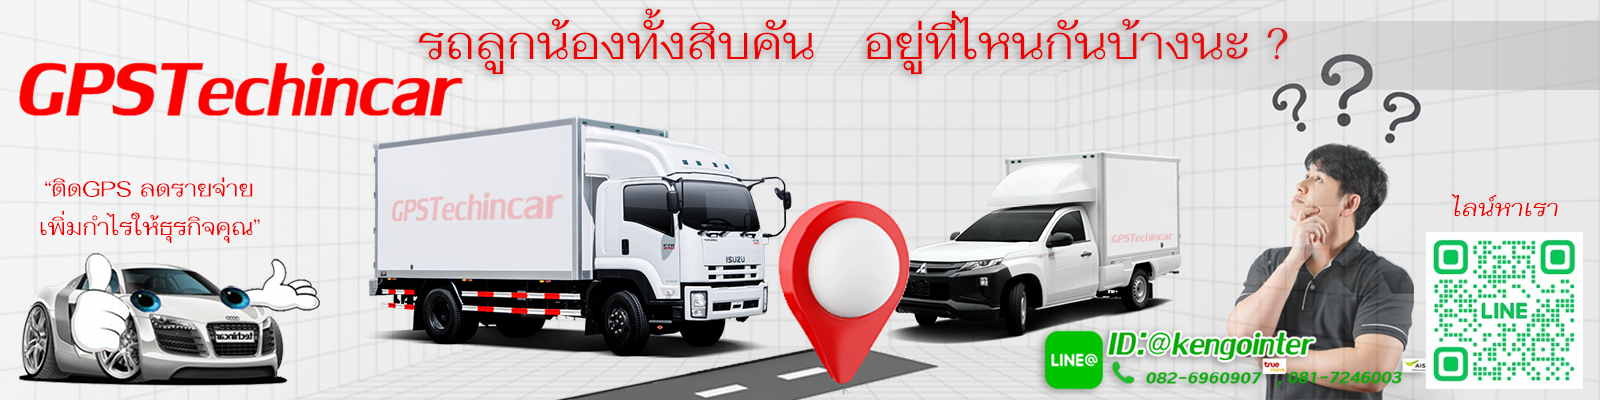 ติดGPS Tracking GPSติดตามตำแหน่ง โดยช่าง ในประเทศไทย